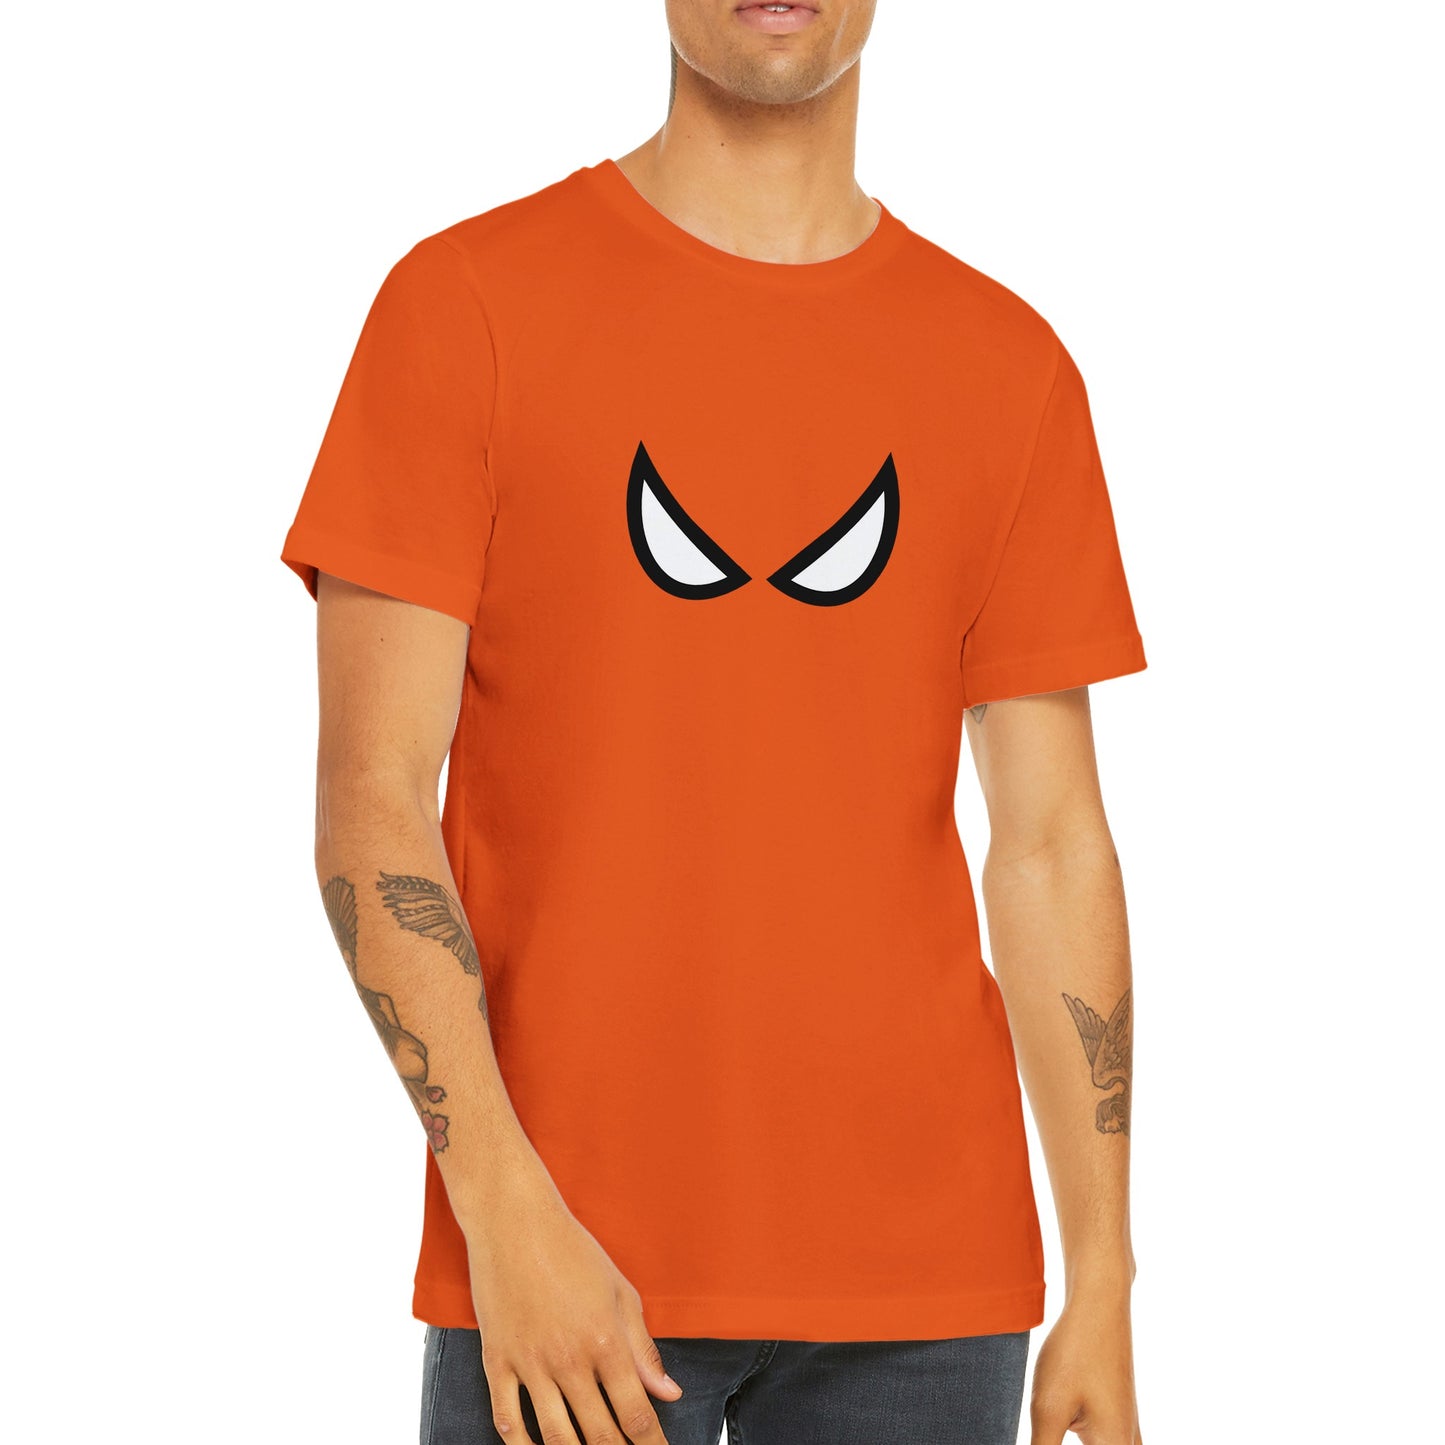 Spider-Man T-shirt